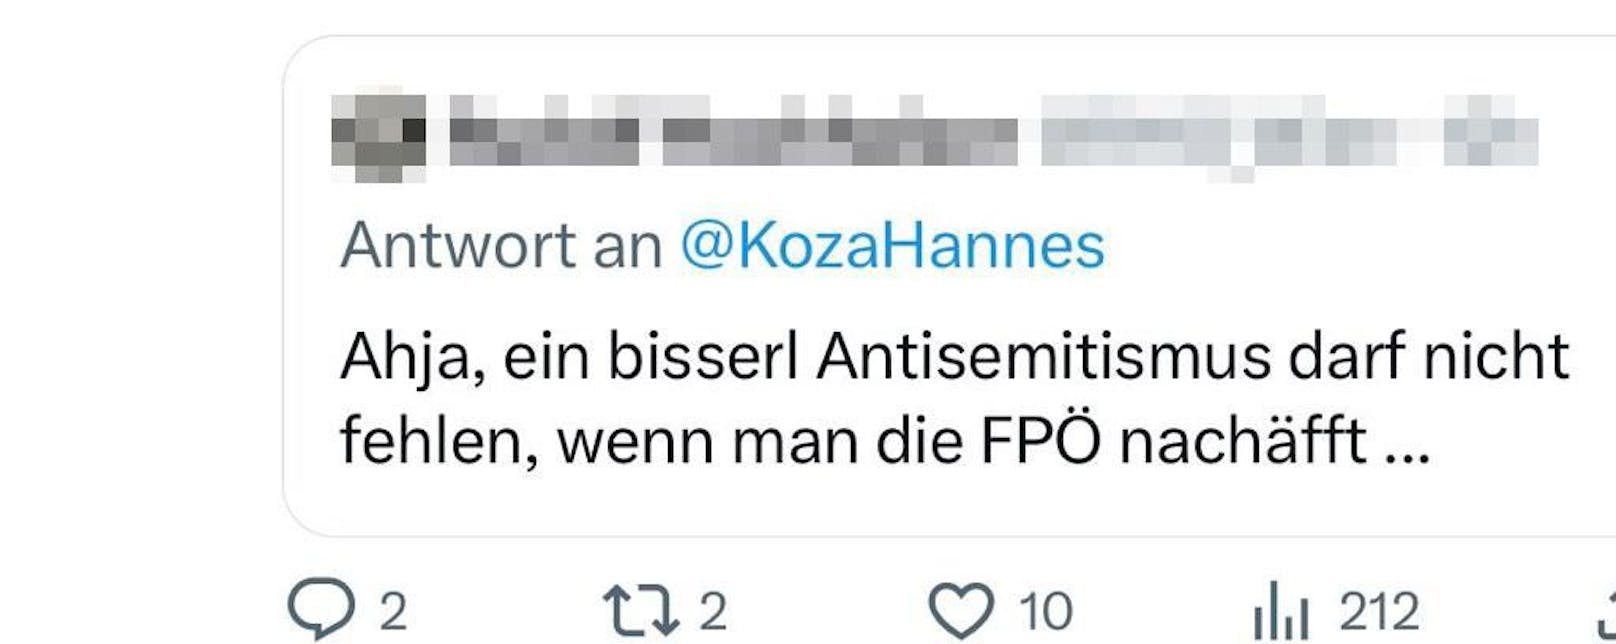 Antisemitismus-Vorwurf auf Twitter